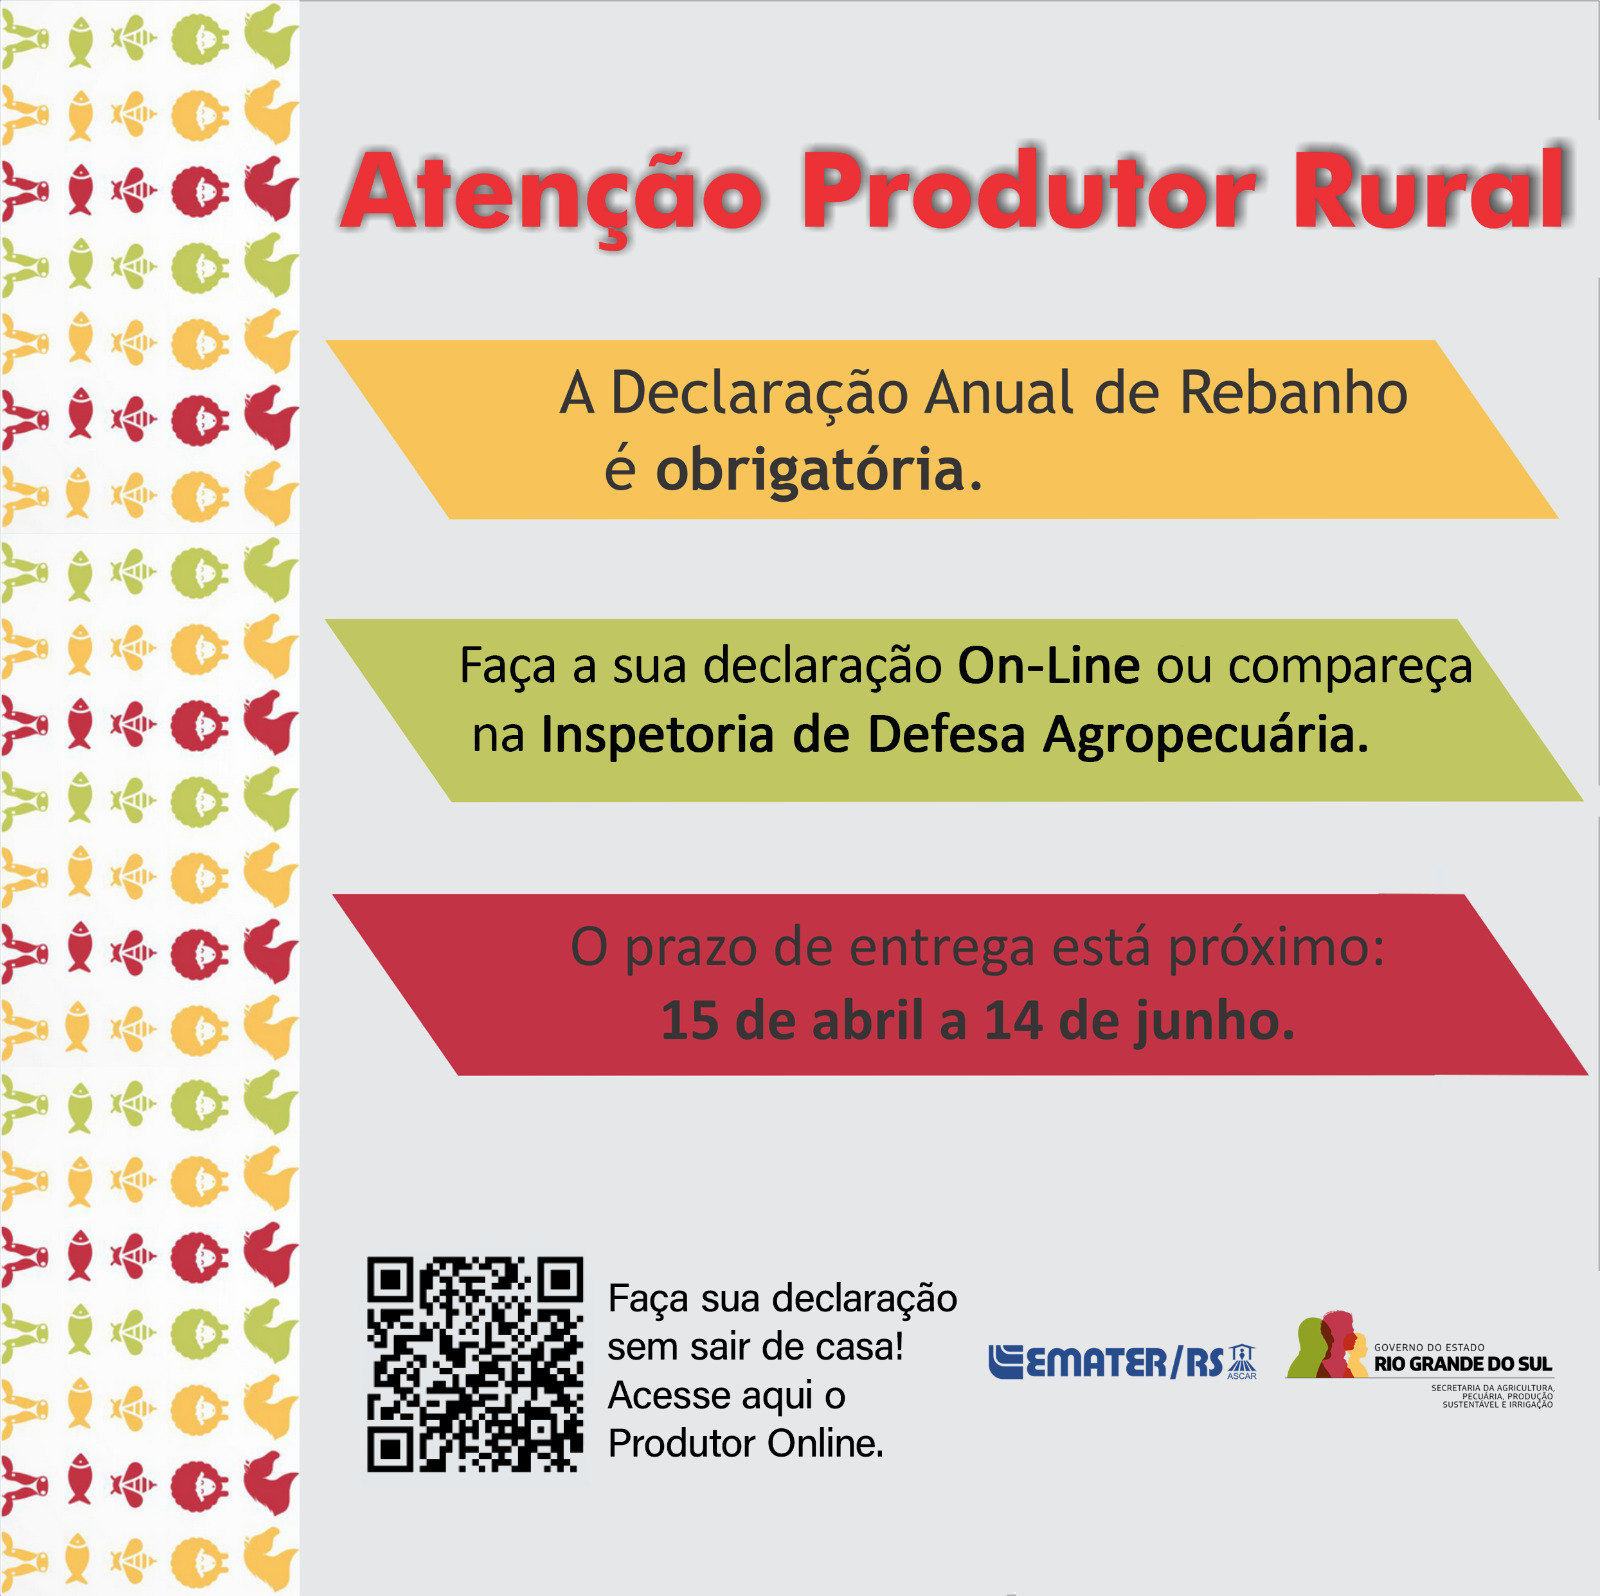 Atenção Produtor Rural